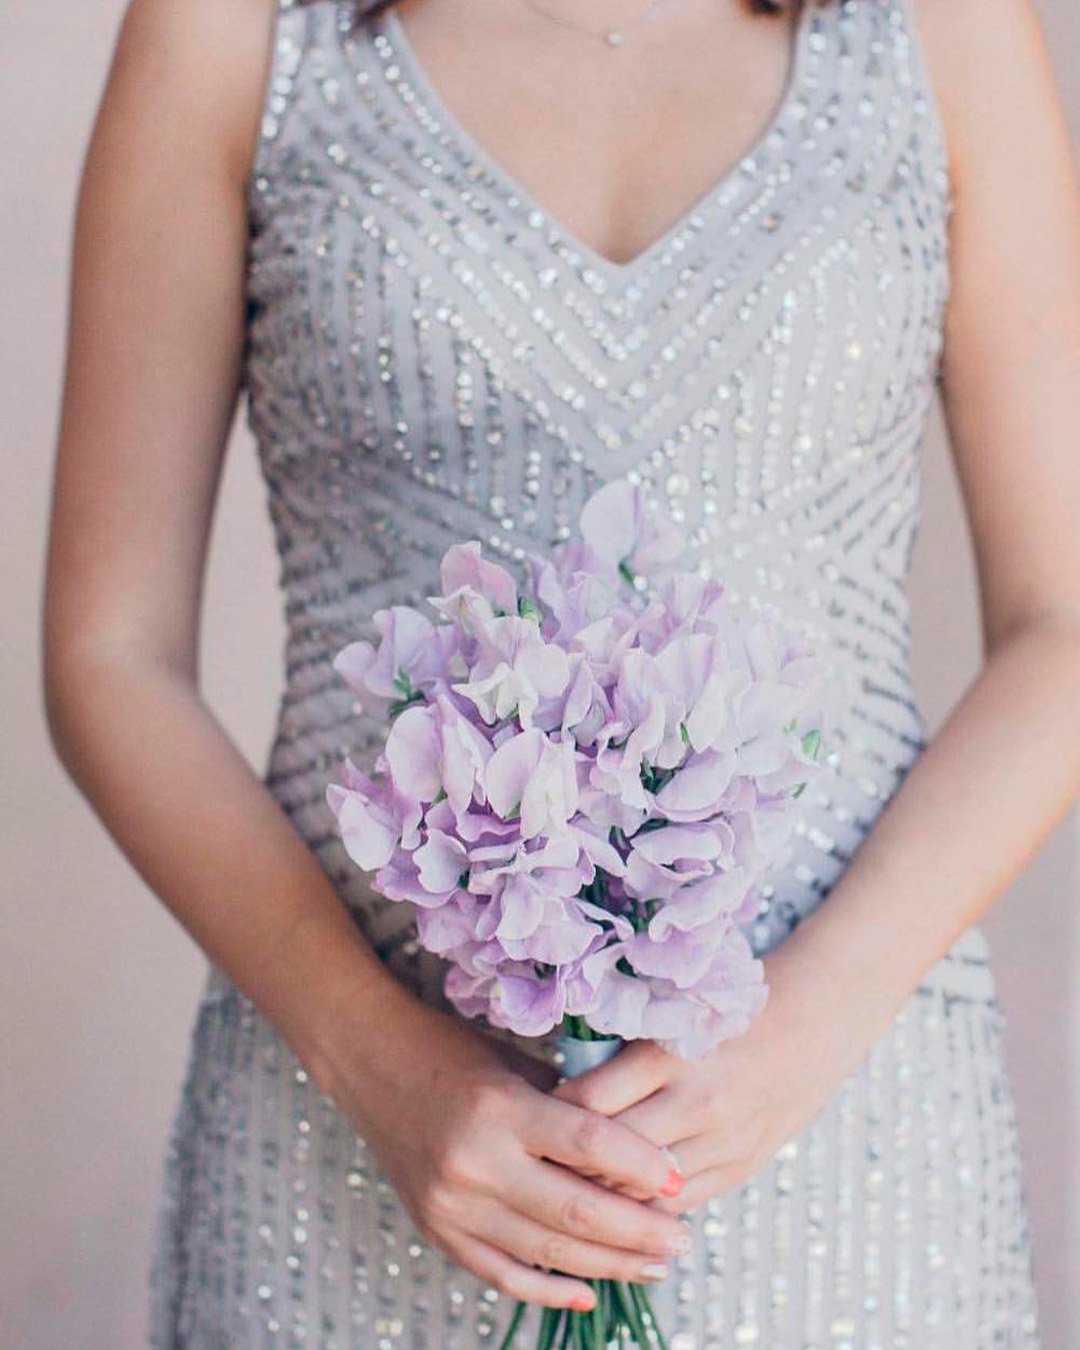 lilac wedding colors bouquet flowers bride